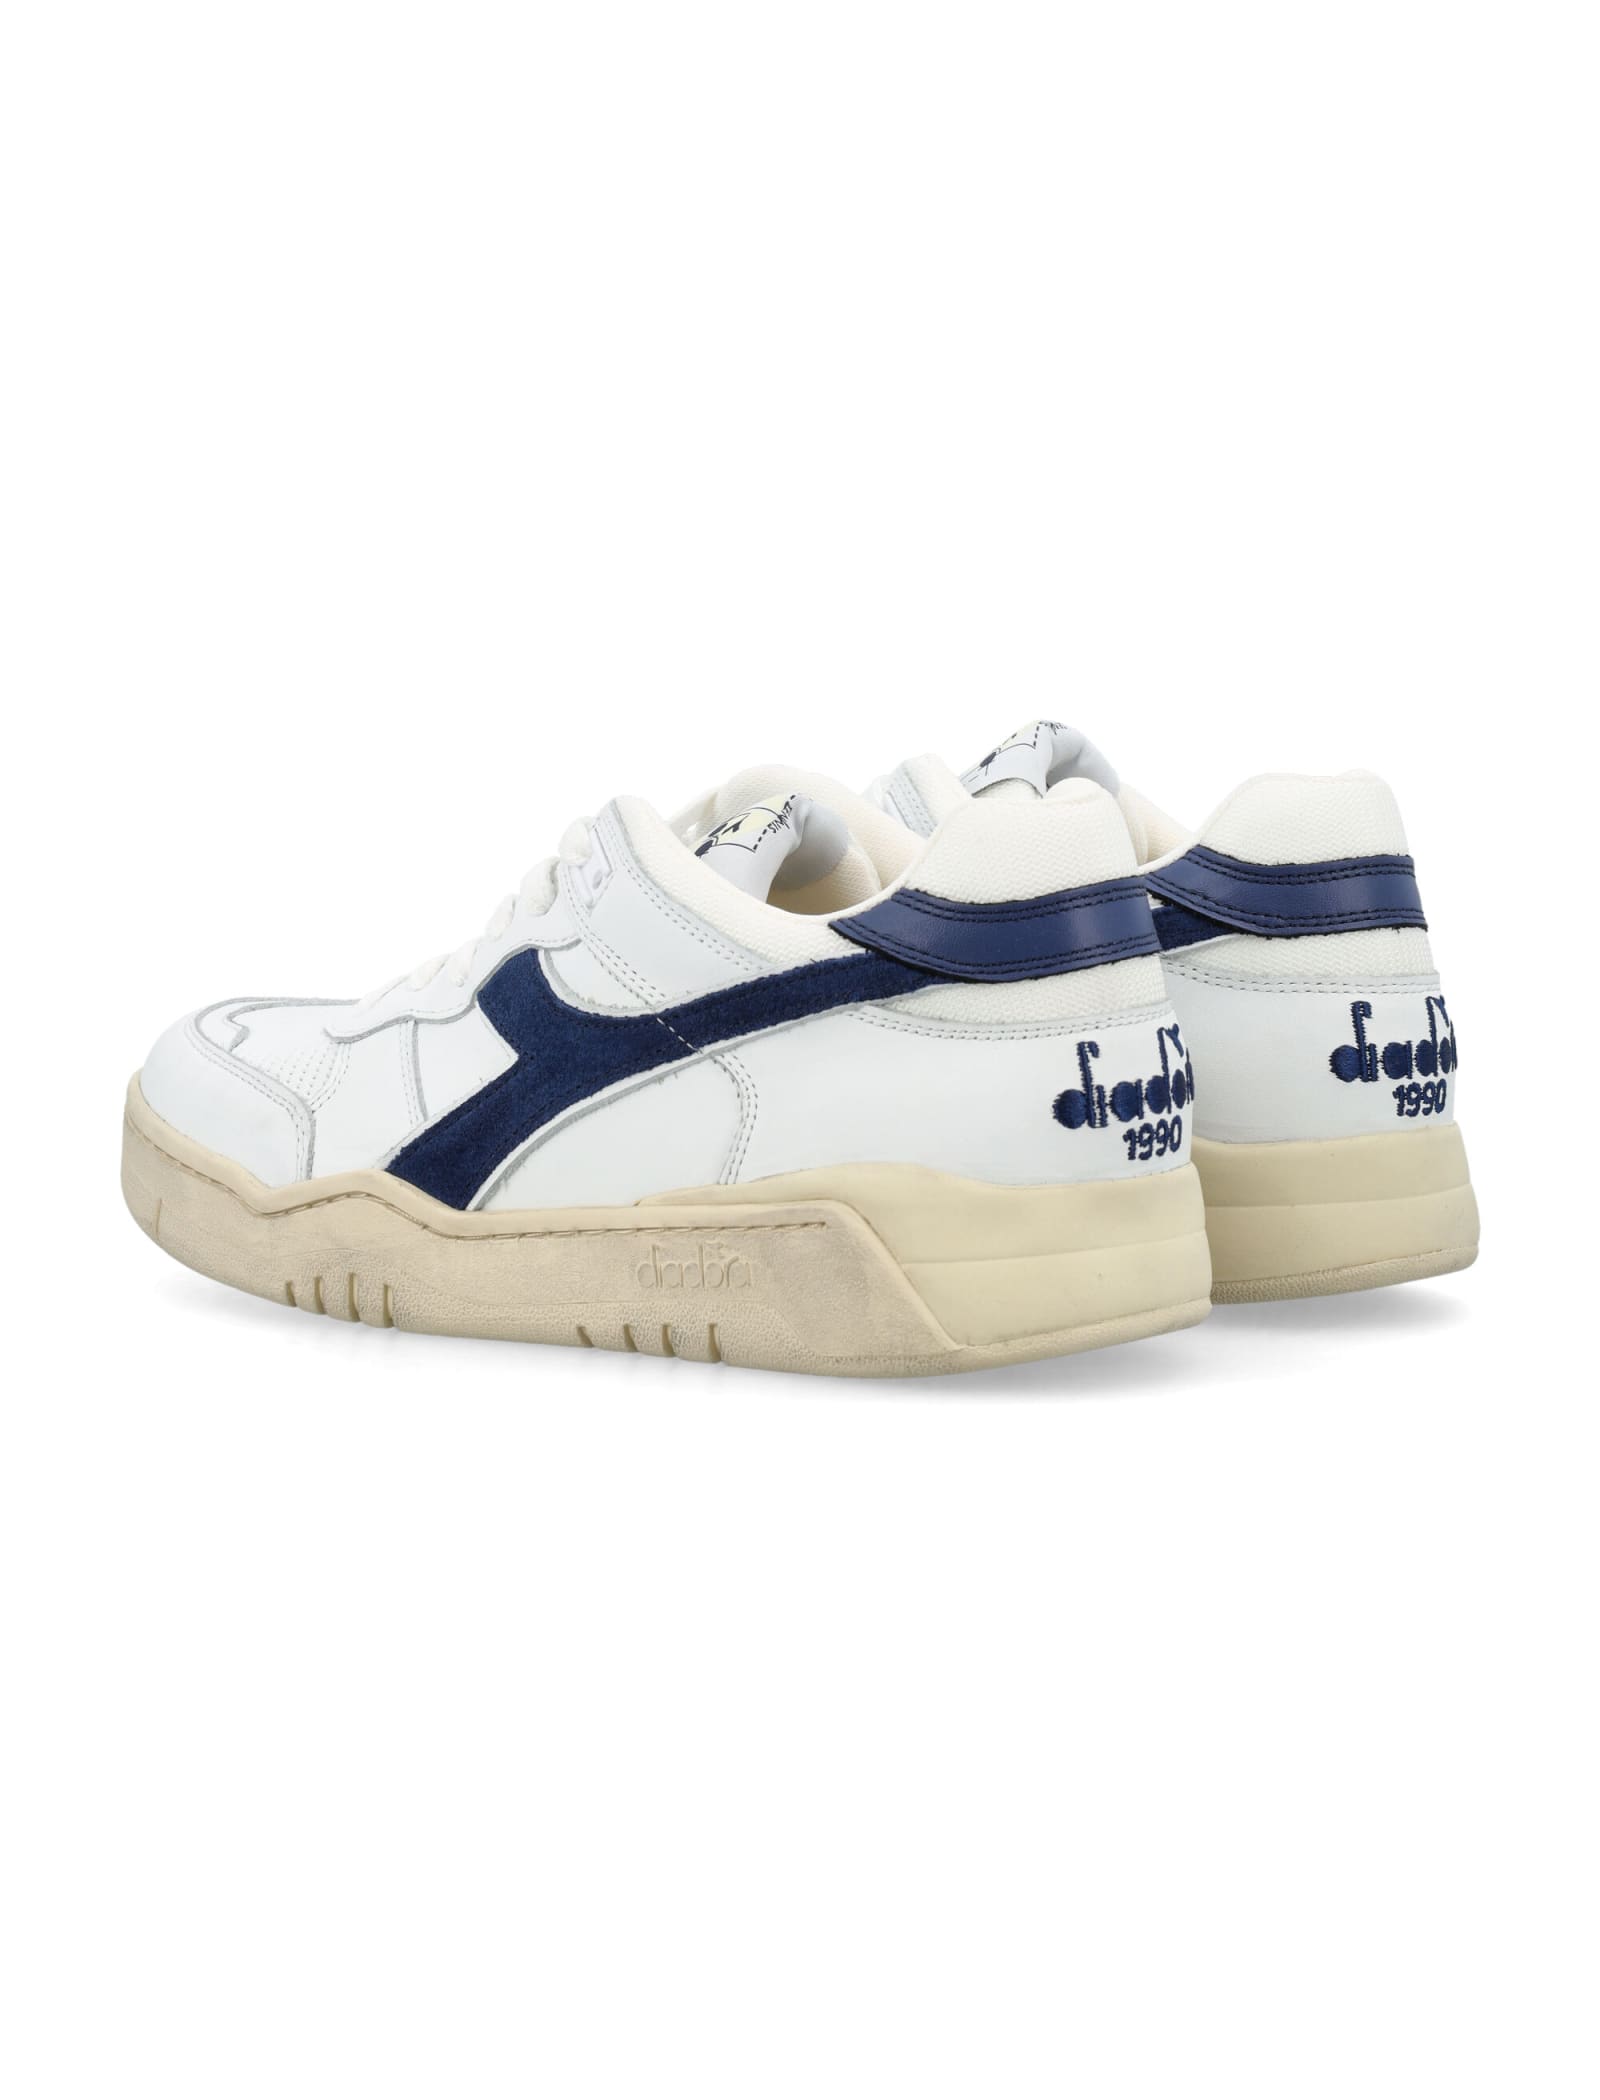 Shop Diadora B.560 Used Sneakers In Bianco/blu Corsaro